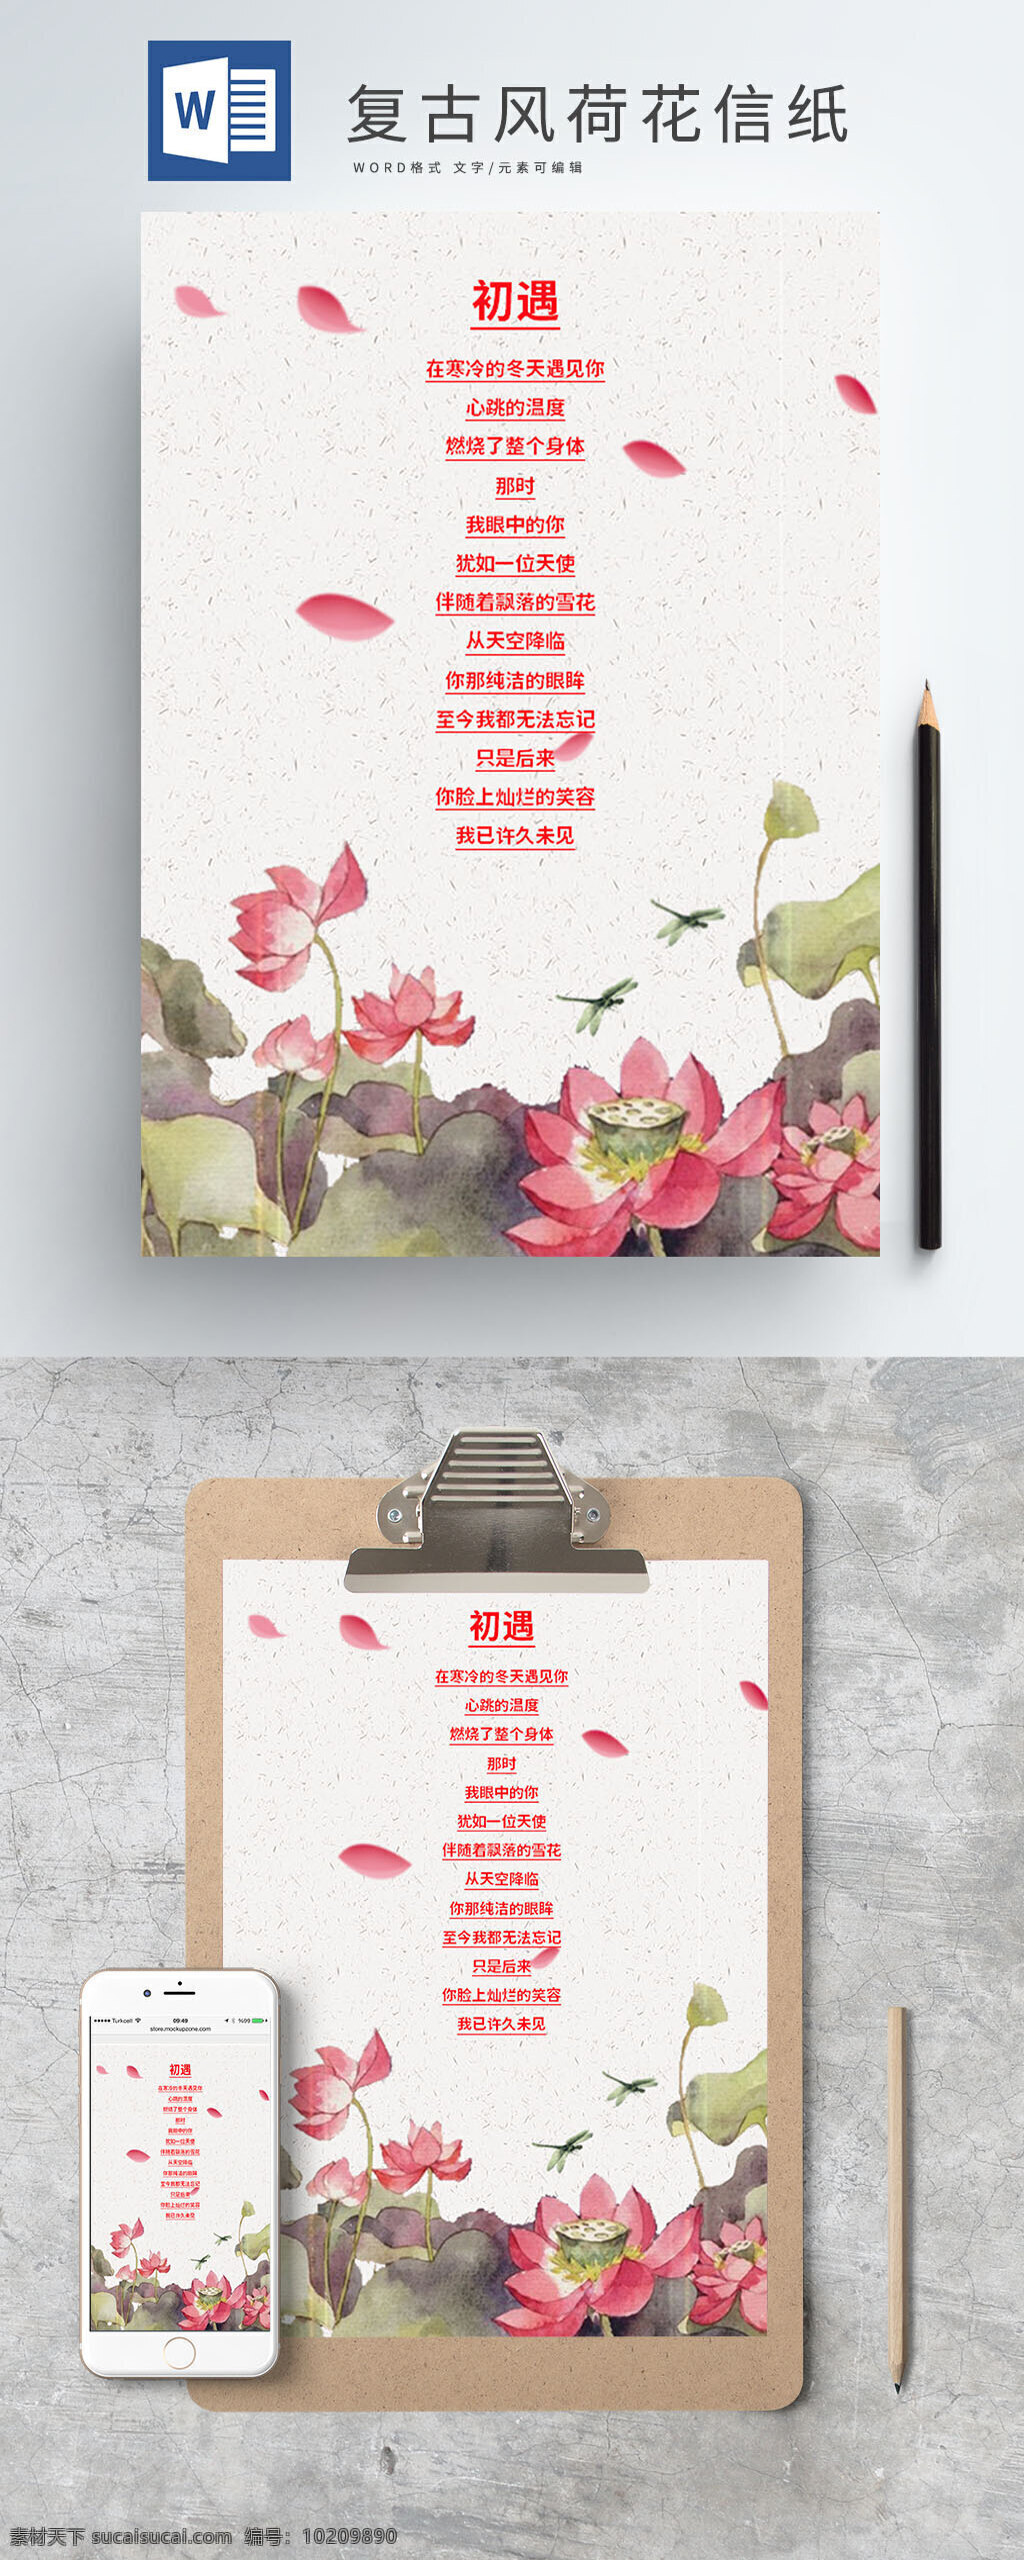 复古 中国 风 荷花 信纸 模板 彩色 中国风 花瓣 手绘 荷叶 蜻蜓